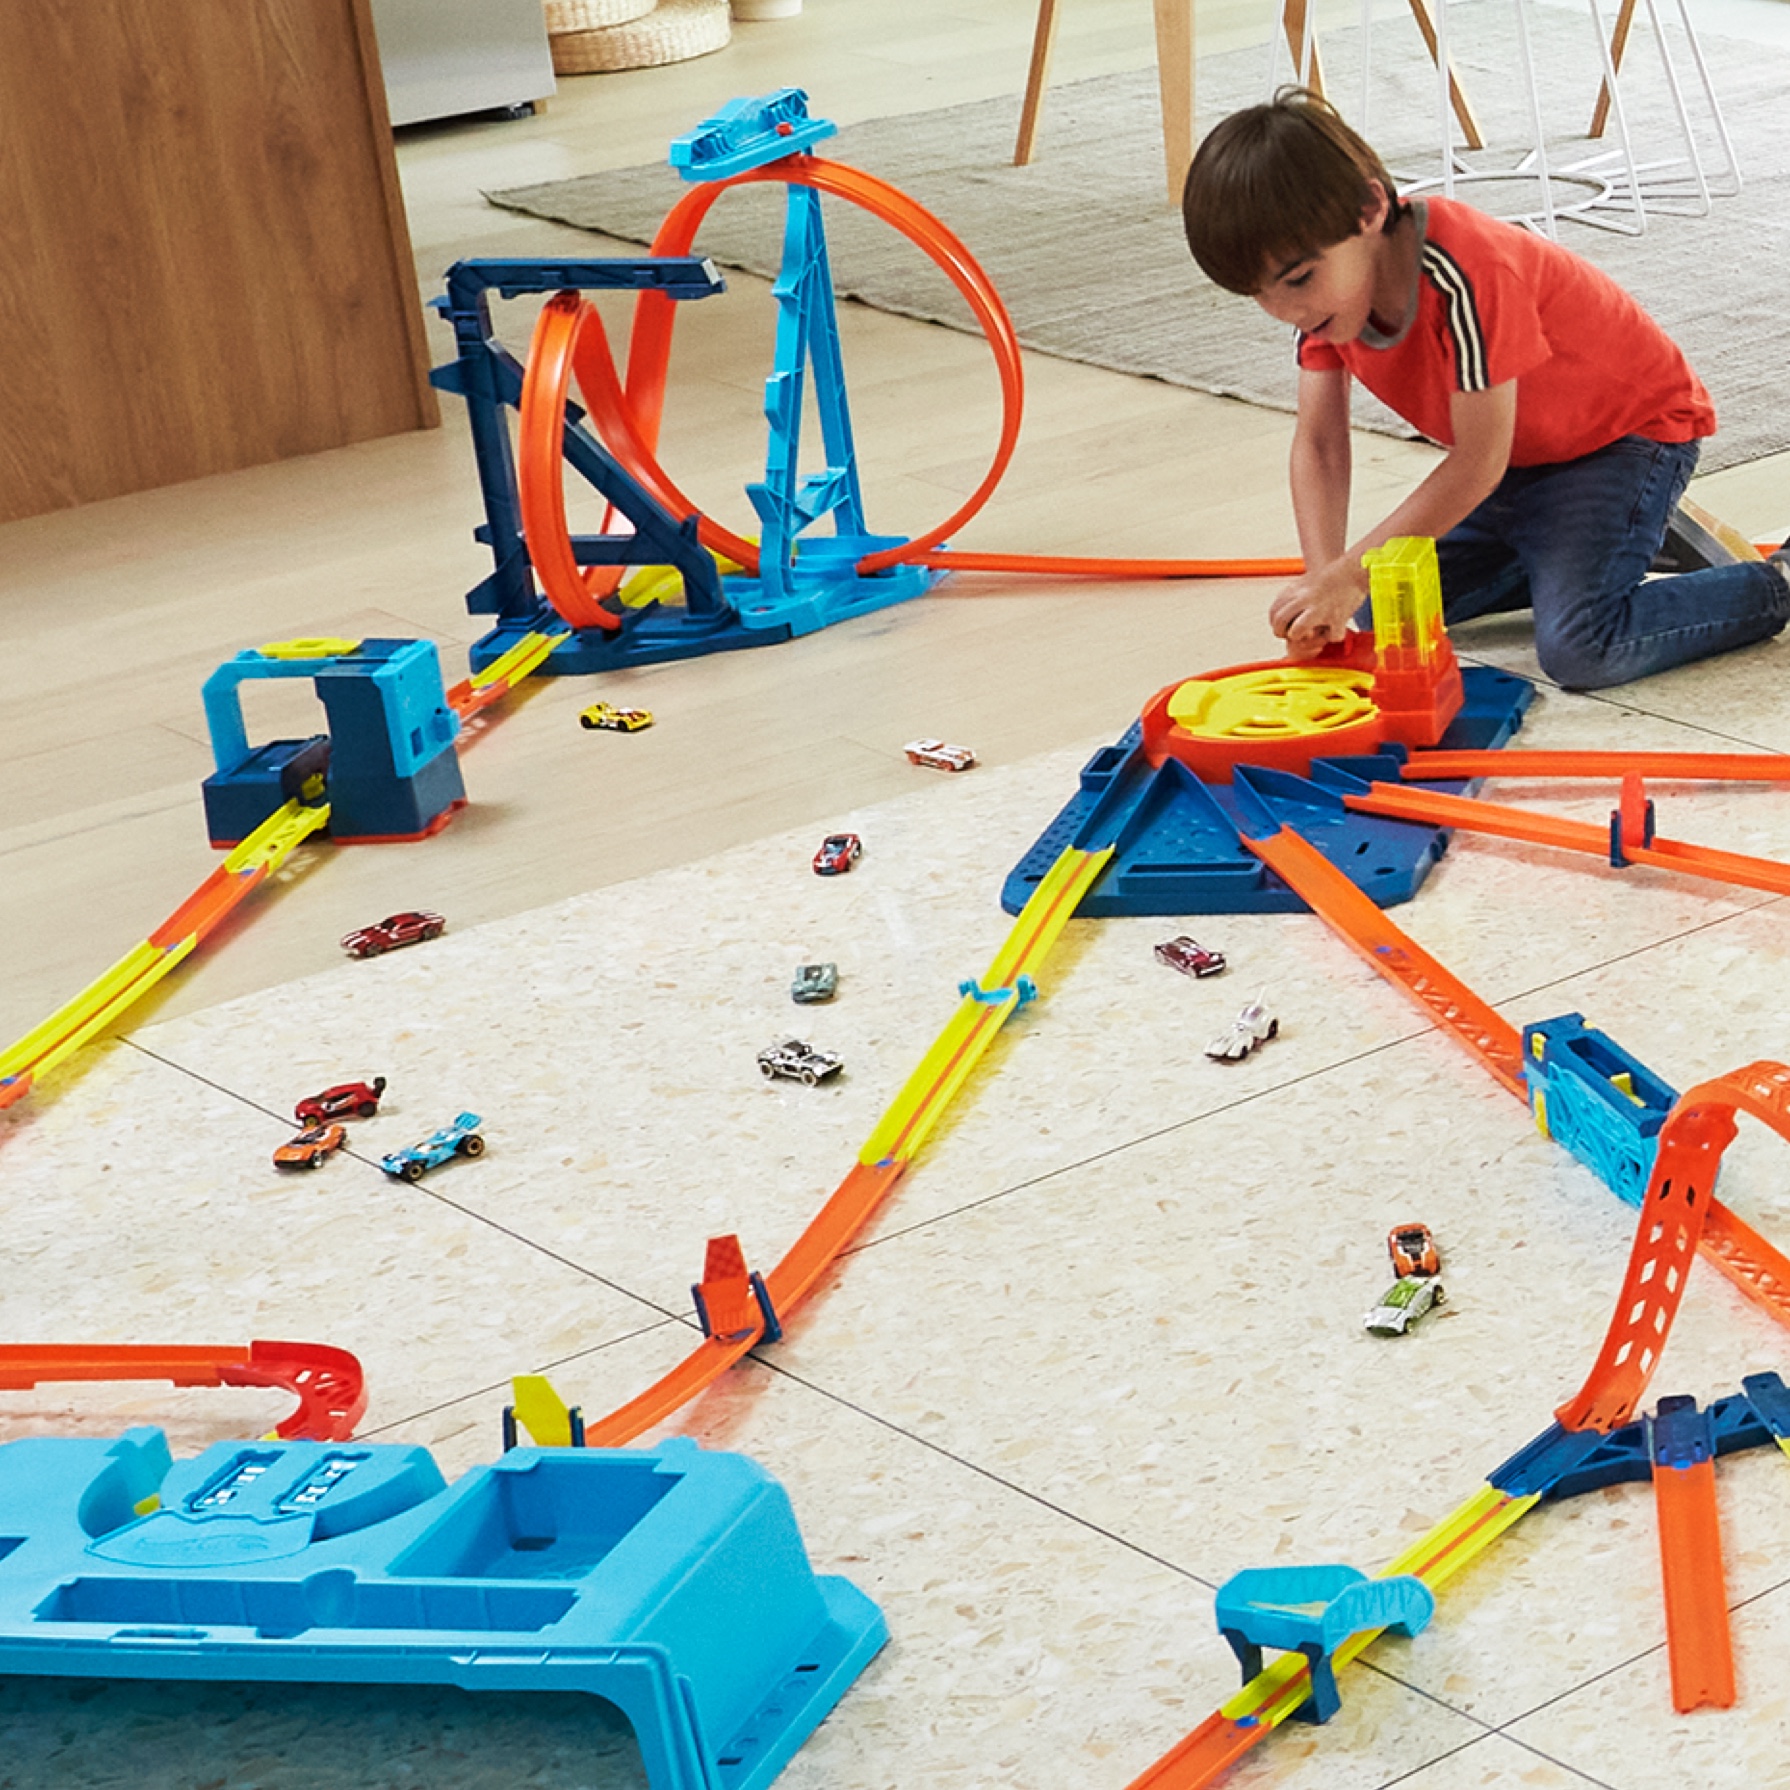 Hot Wheels Track Builder - Coffret Station explosive Mattel : King